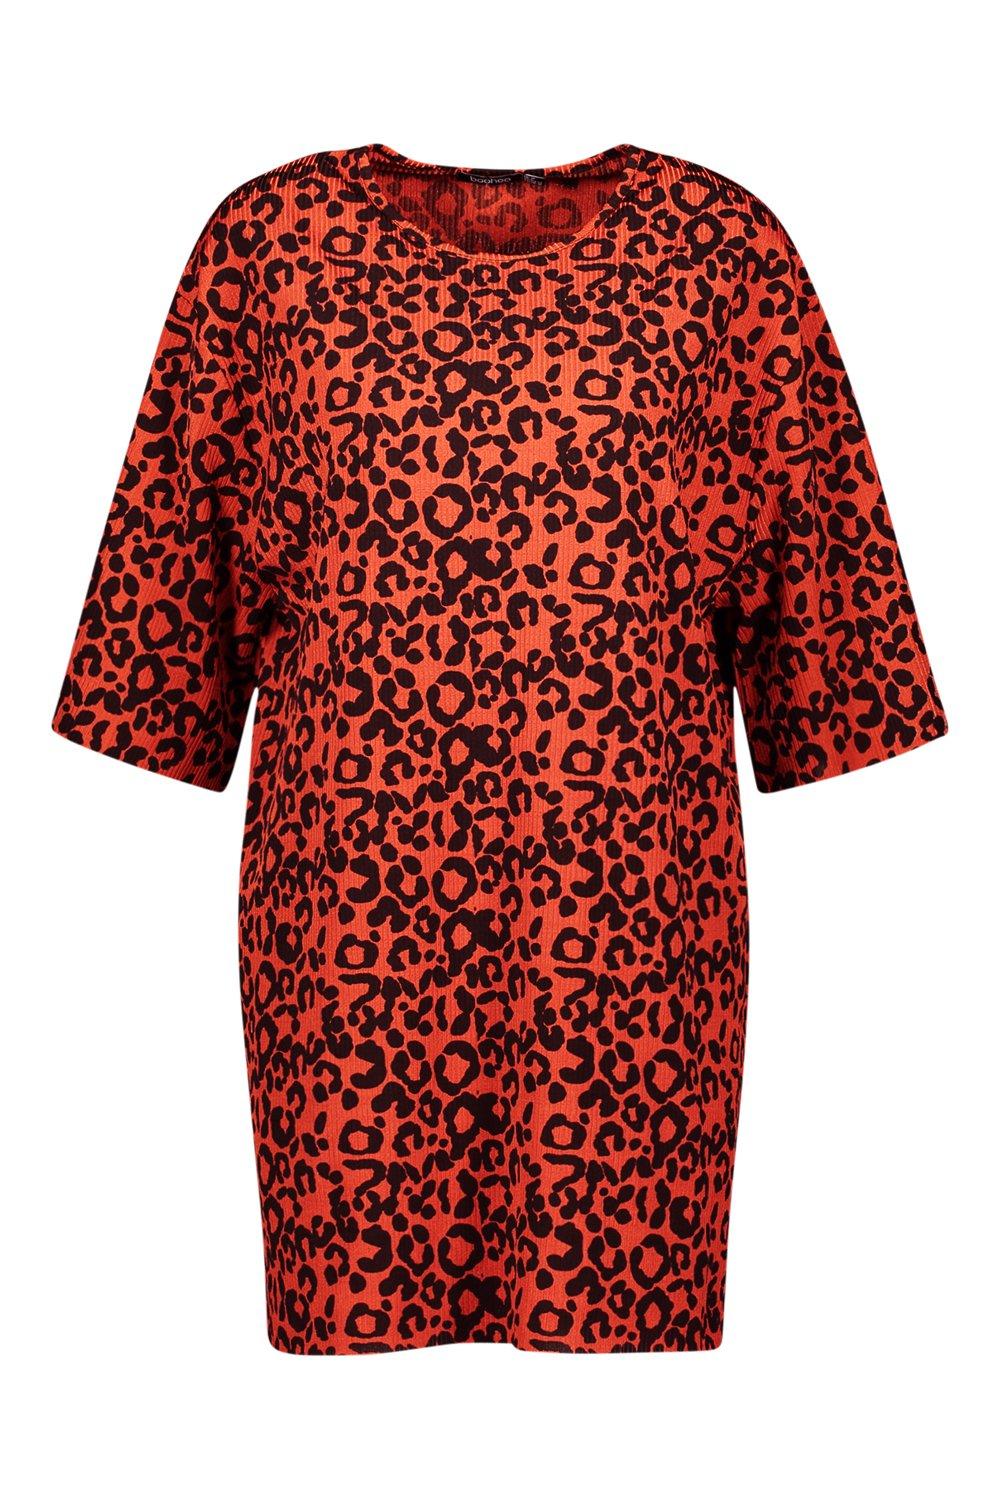 

Крупные платье-футляр в рубчик с леопардовым принтом, Terracotta